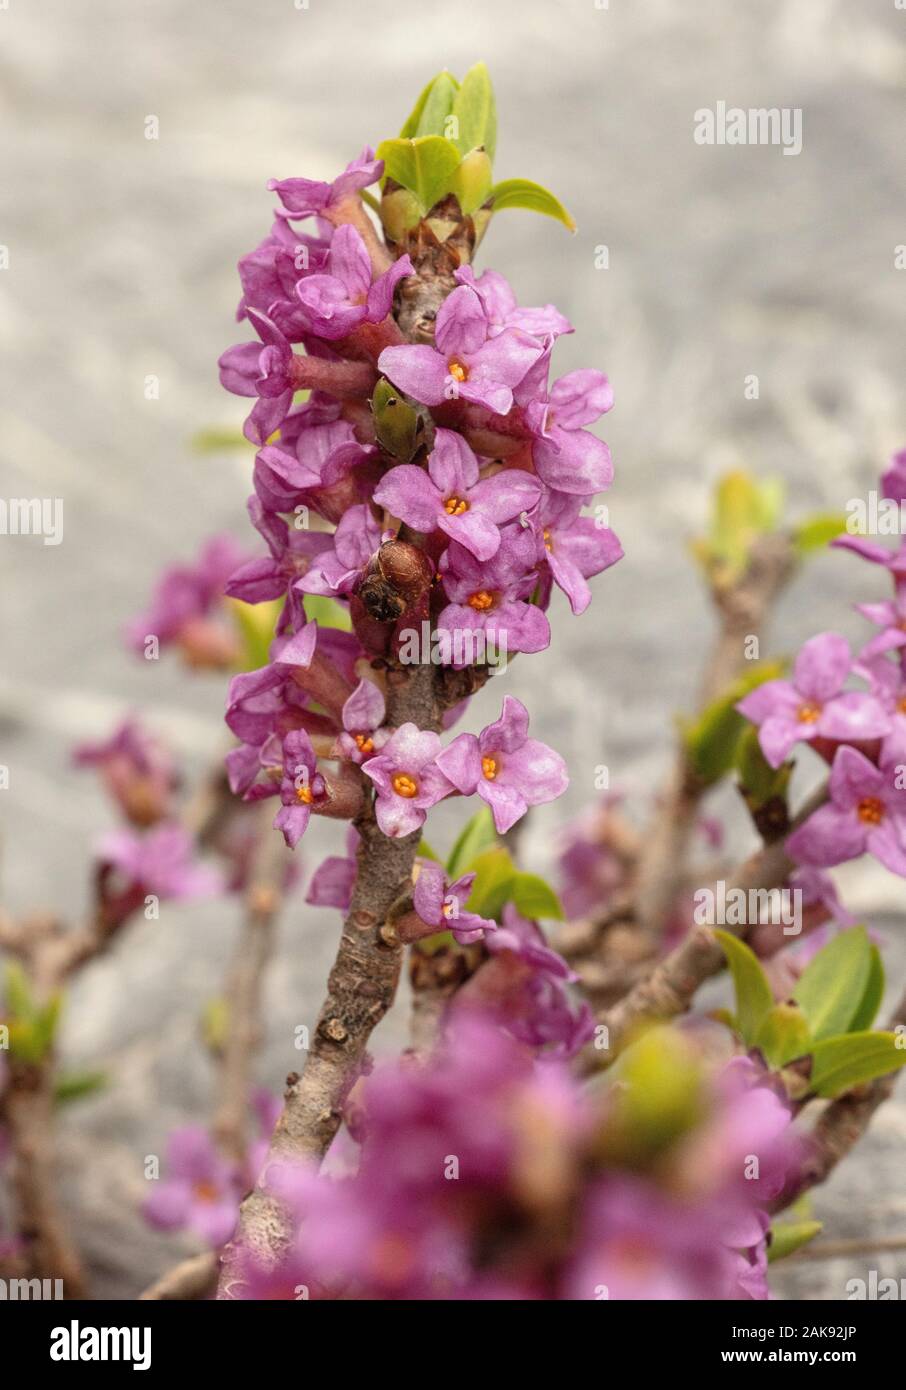 Mezereon, Daphne mezereum, in flower in early spring. Stock Photo